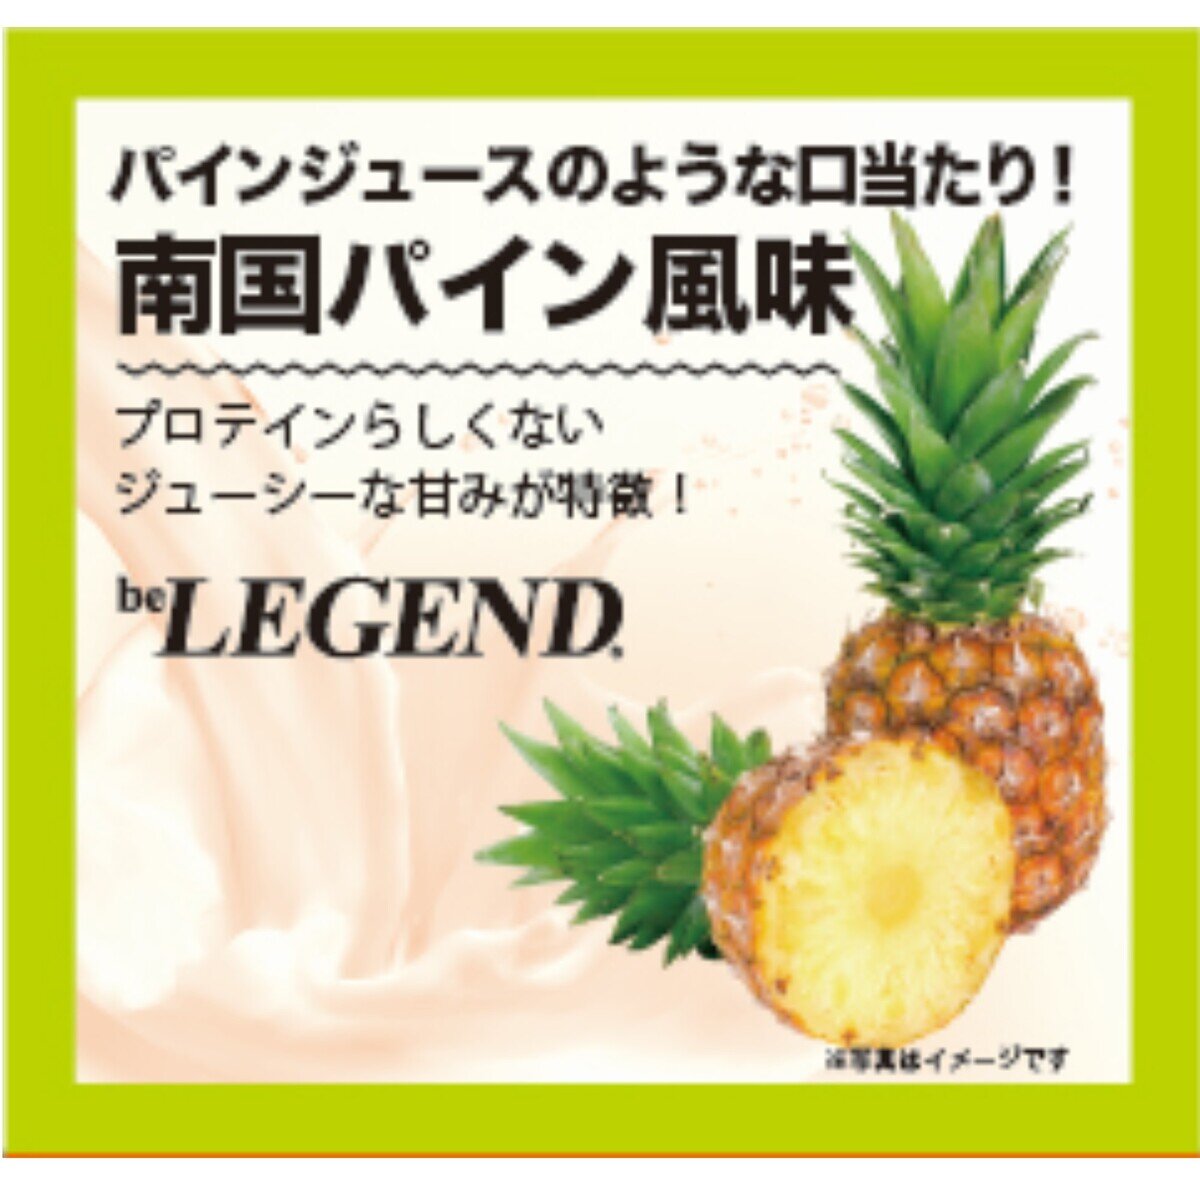 ビーレジェンド プロテイン 700g X3袋 サワーフルーツプロテインセット | Costco Japan